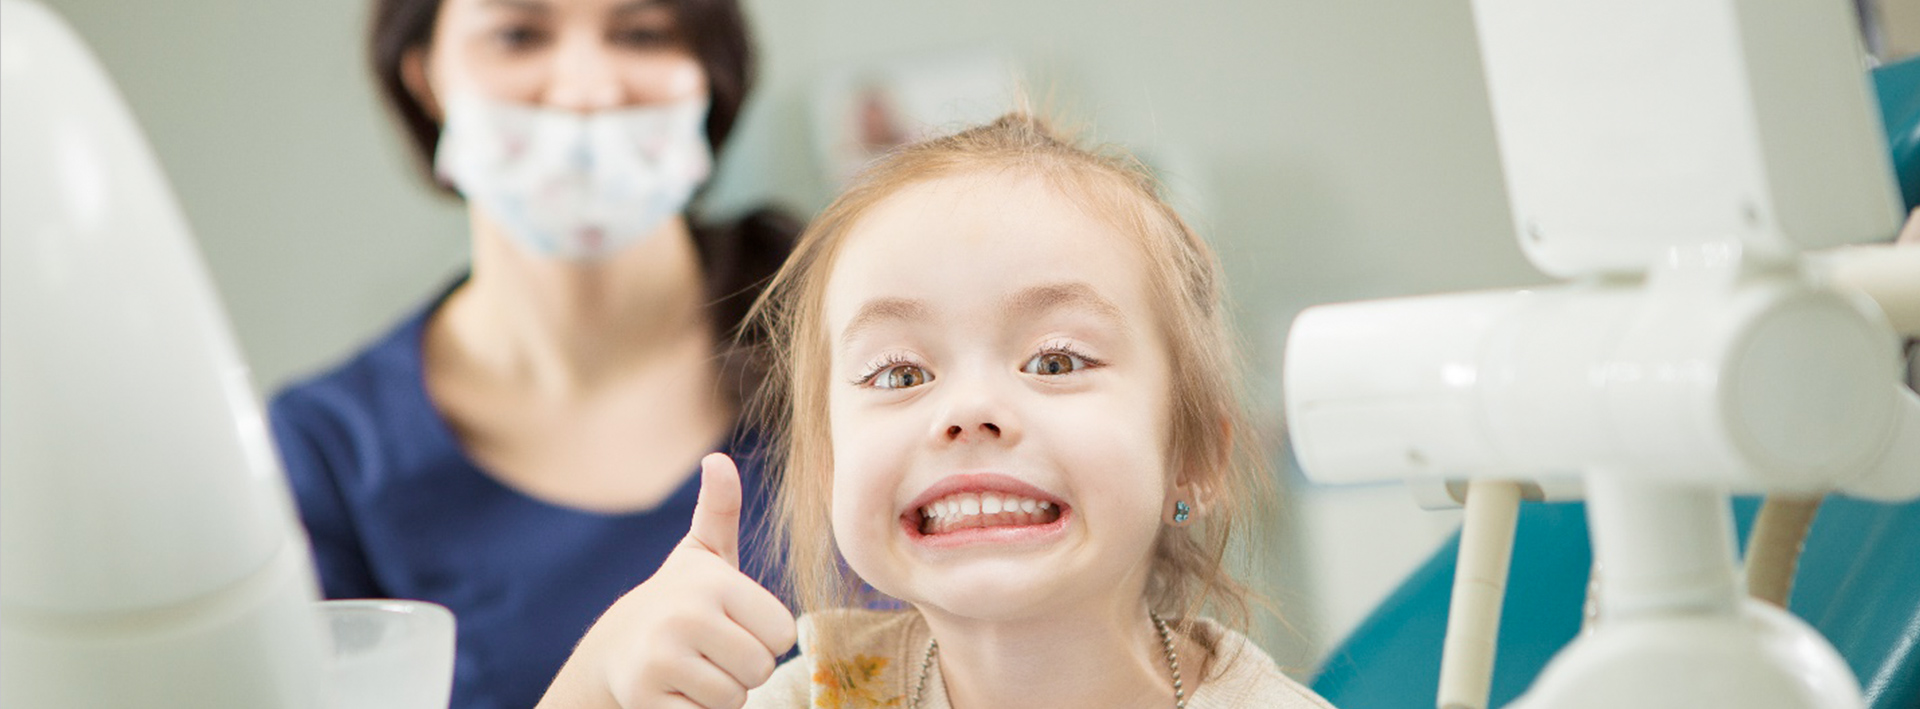 стоматология детская круглосуточно томск